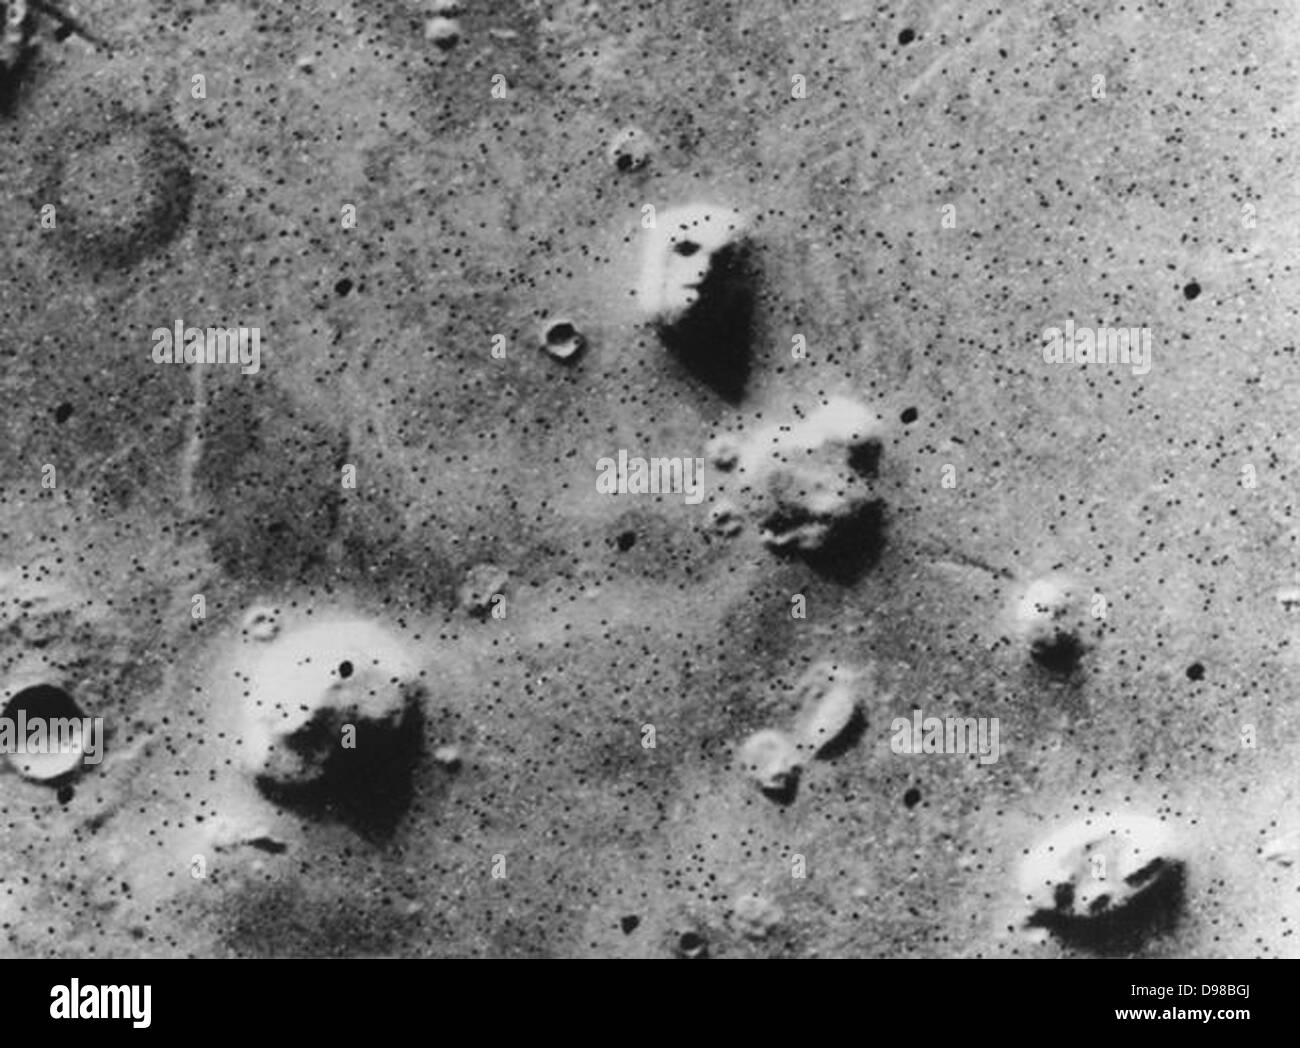 Viking Orbiter Image genommen 25. Juli 1976 am 22. Juli 2006, der DLR betrieben hohe Auflösung Stereokamera "Gesicht auf dem Mars" Stockfoto